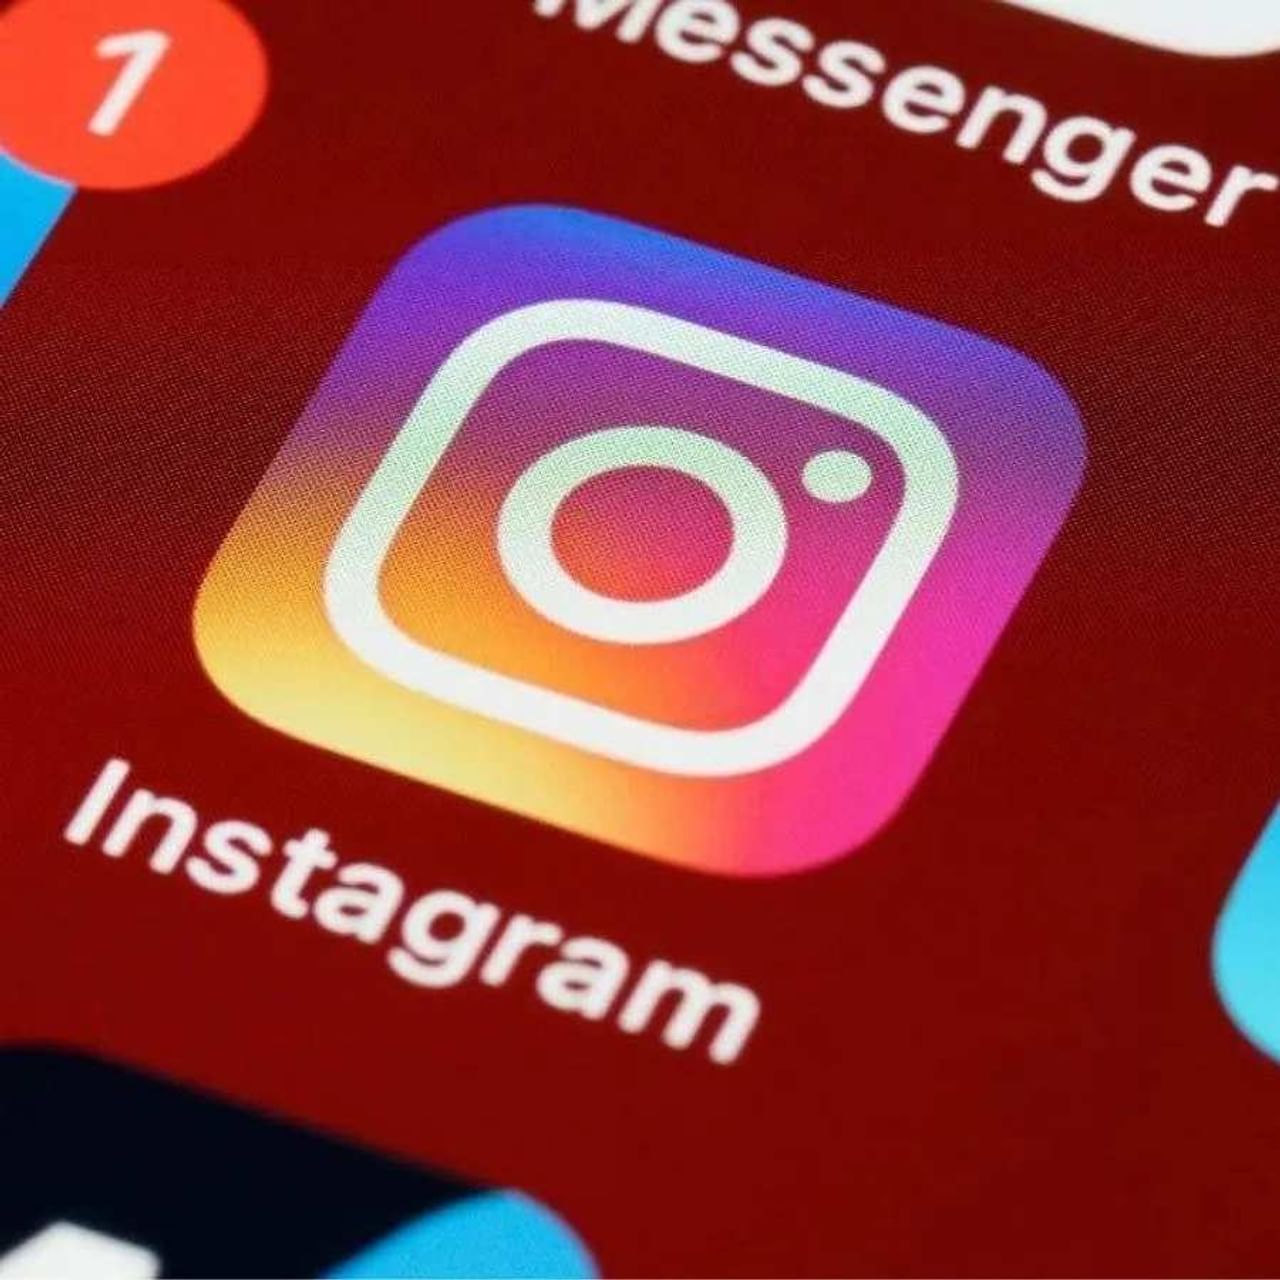 લોકપ્રિય ફોટો અને વીડિયો શેરિંગ પ્લેટફોર્મ ઈન્સ્ટાગ્રામ (Instagram)એ વિશ્વભરમાં સૌથી વધુ ઉપયોગમાં લેવાતા સોશિયલ મીડિયા પ્લેટફોર્મ્સમાંનું એક છે. તેના વપરાશકર્તાઓની સલામતીની સાથે, કંપની વપરાશકર્તાઓને વધુ સારો, વધુ મનોરંજક અનુભવ આપવા માટે નવી સુવિધાઓ અપડેટ કરી રહી છે. નવા ઈન્સ્ટાગ્રામ અપડેટ્સ (Instagram Update)ટૂંક સમયમાં ઉપલબ્ધ થશે. ઇન્સ્ટાગ્રામ હવે ફોટો શેરિંગ તેમજ રીલ્સ બનાવવા માટે ખૂબ જ લોકપ્રિય છે.